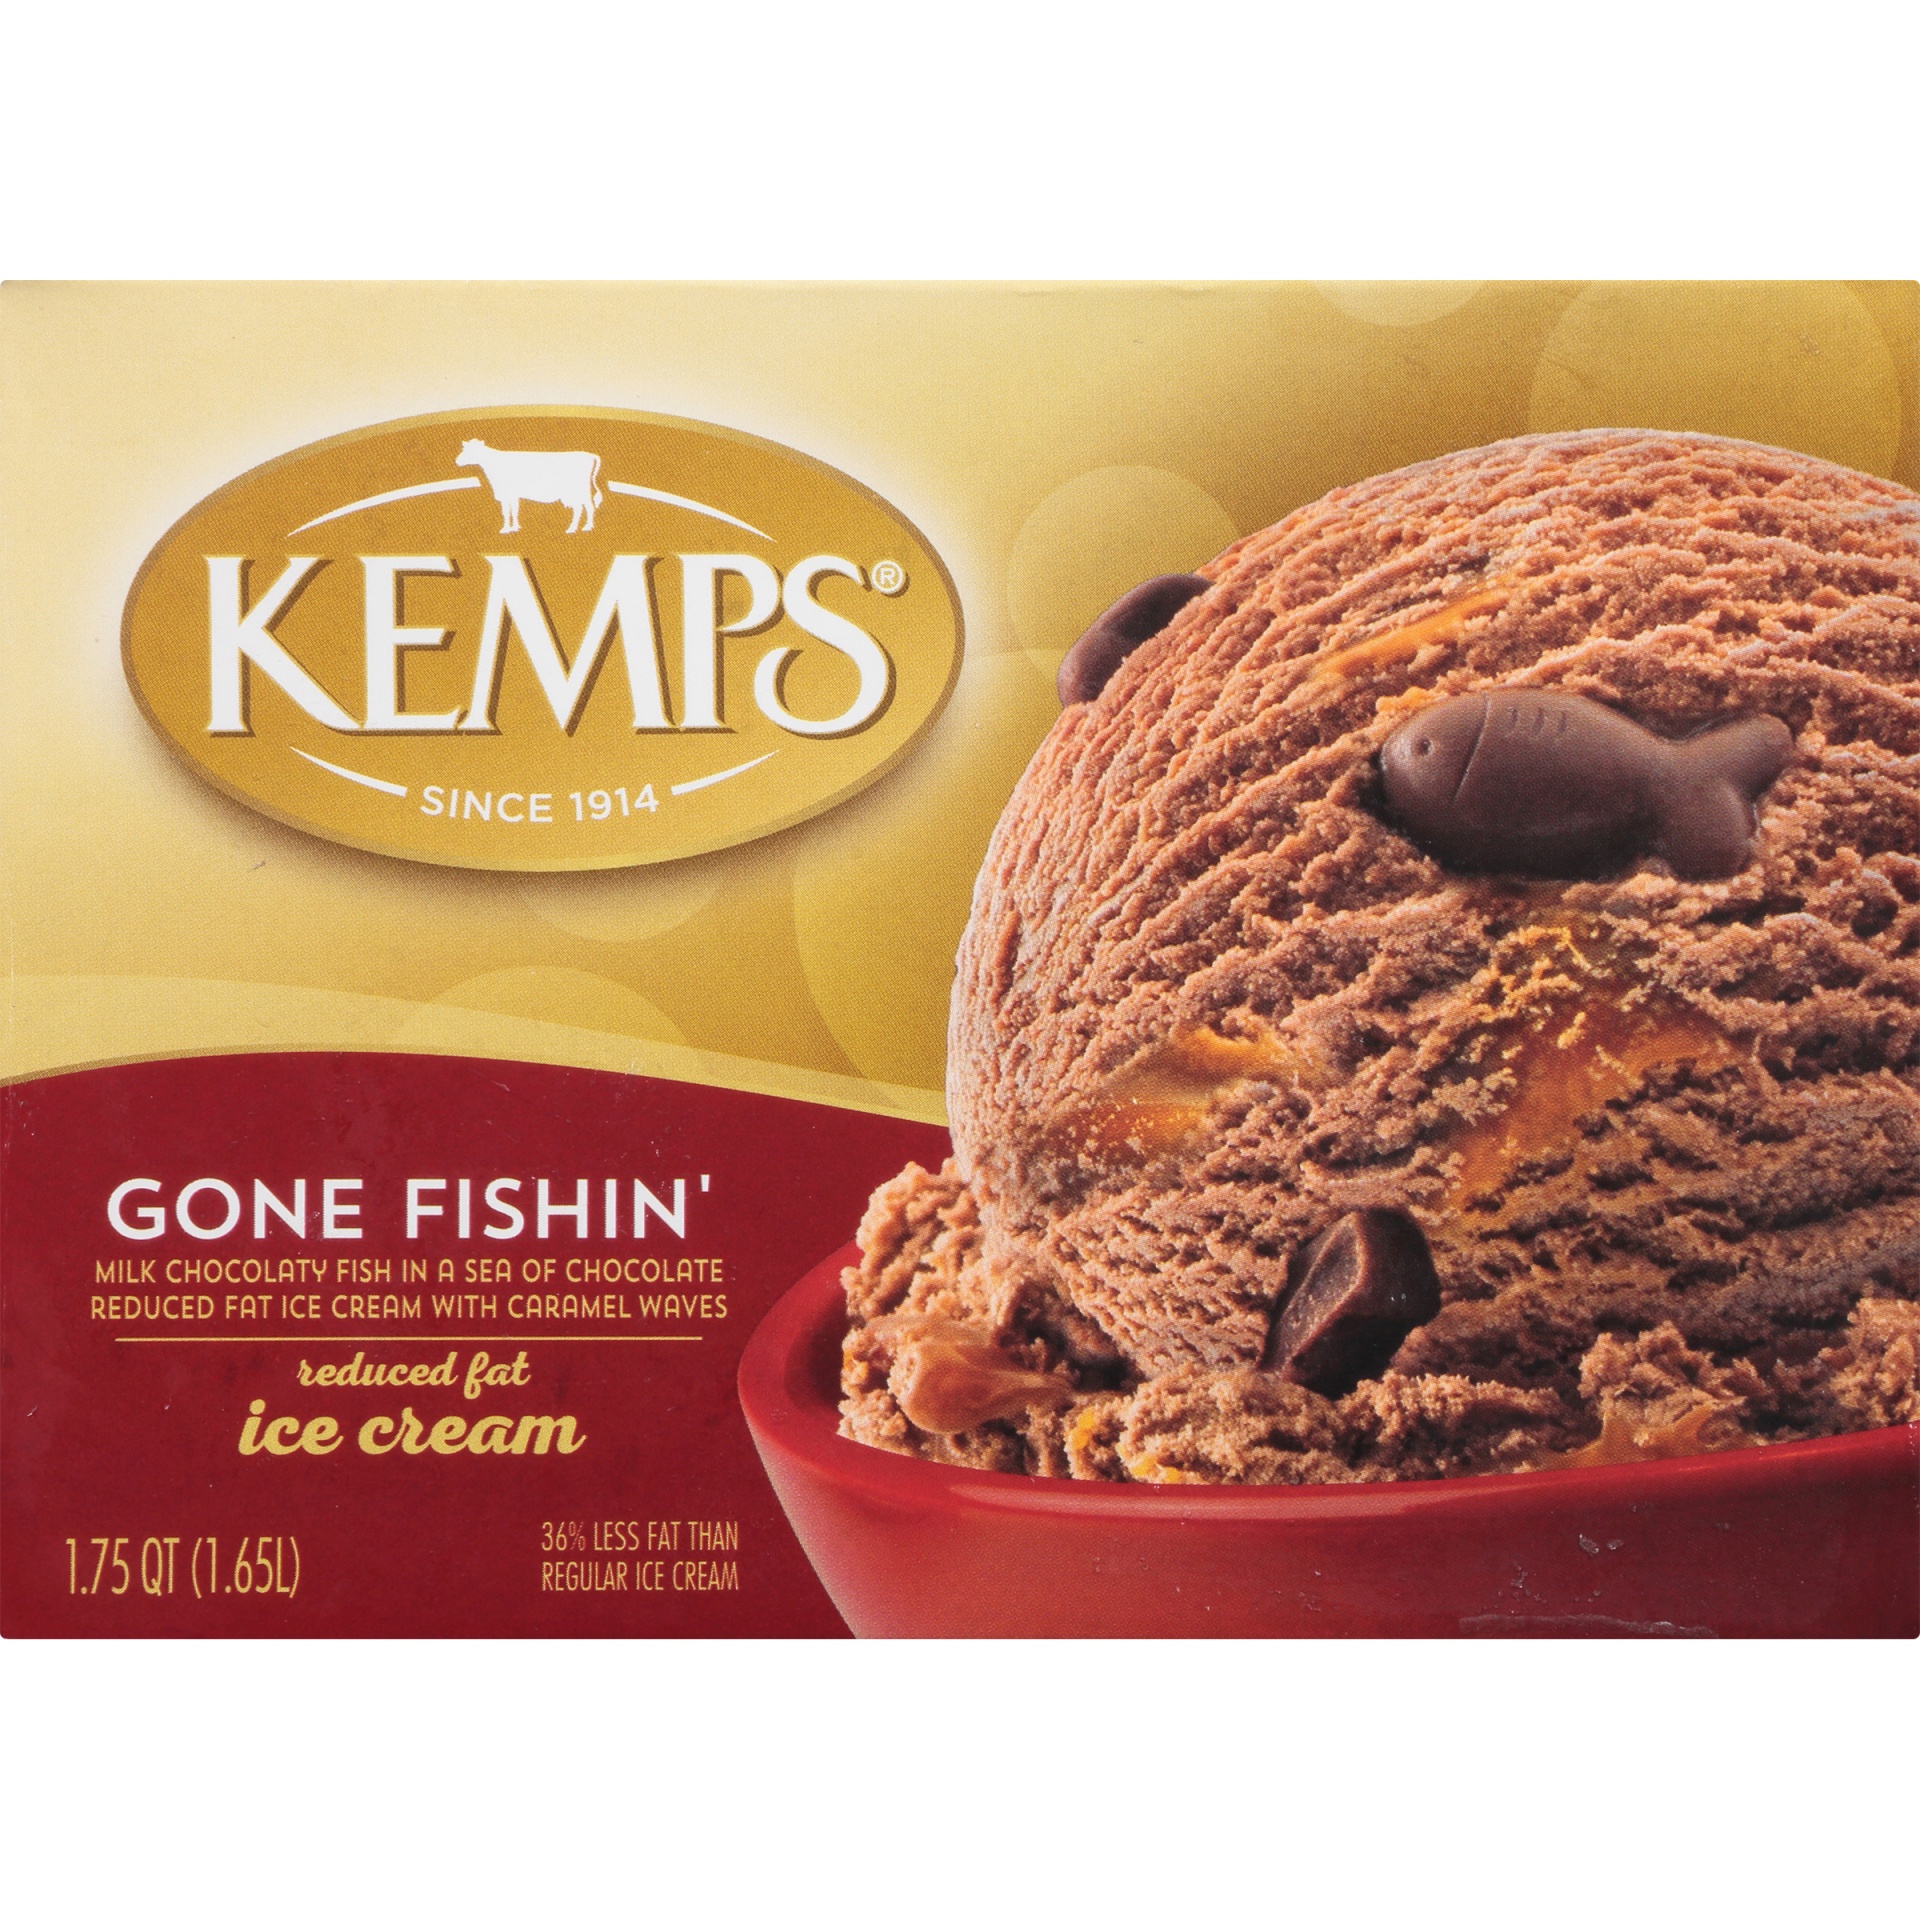 slide 6 of 8, Kemps Ice Cream 1.75 qt, 1.75 qt